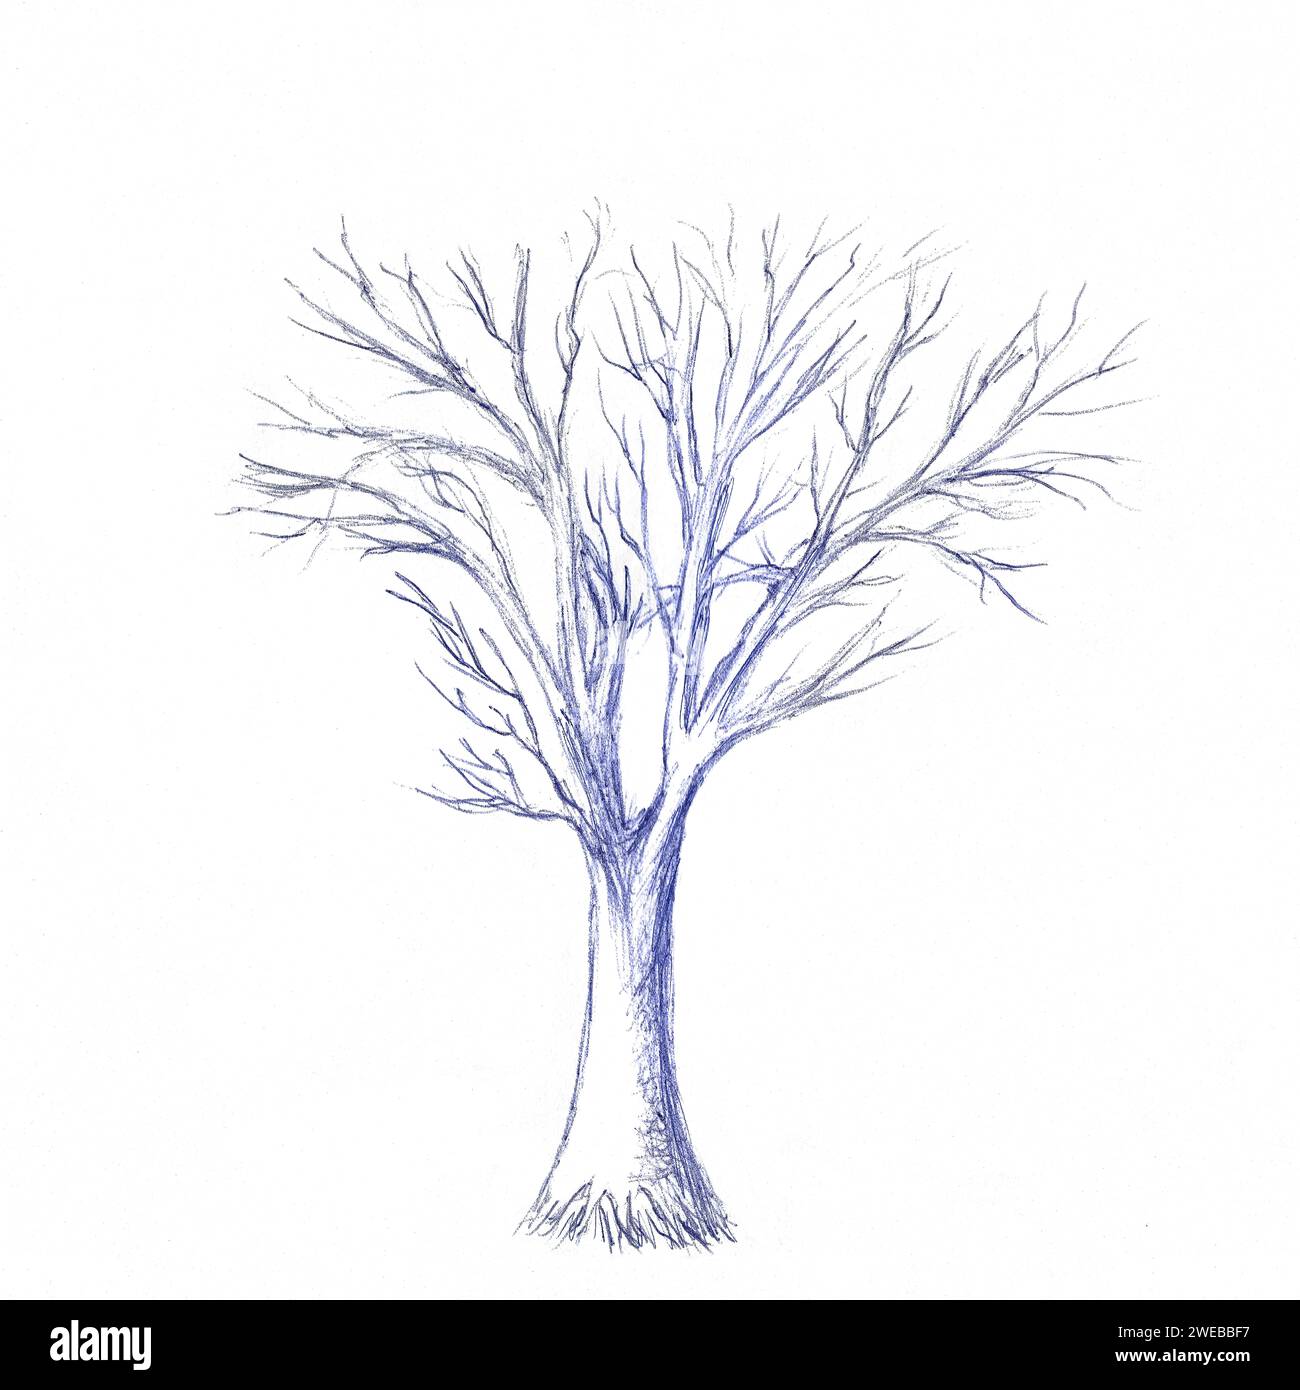 Abstrakter primitiver Baum. kugelschreiberskizze. Vereinfachtes Zeichnen für die Praxis, das Skizzieren mit Kugelschreiber. Stockfoto